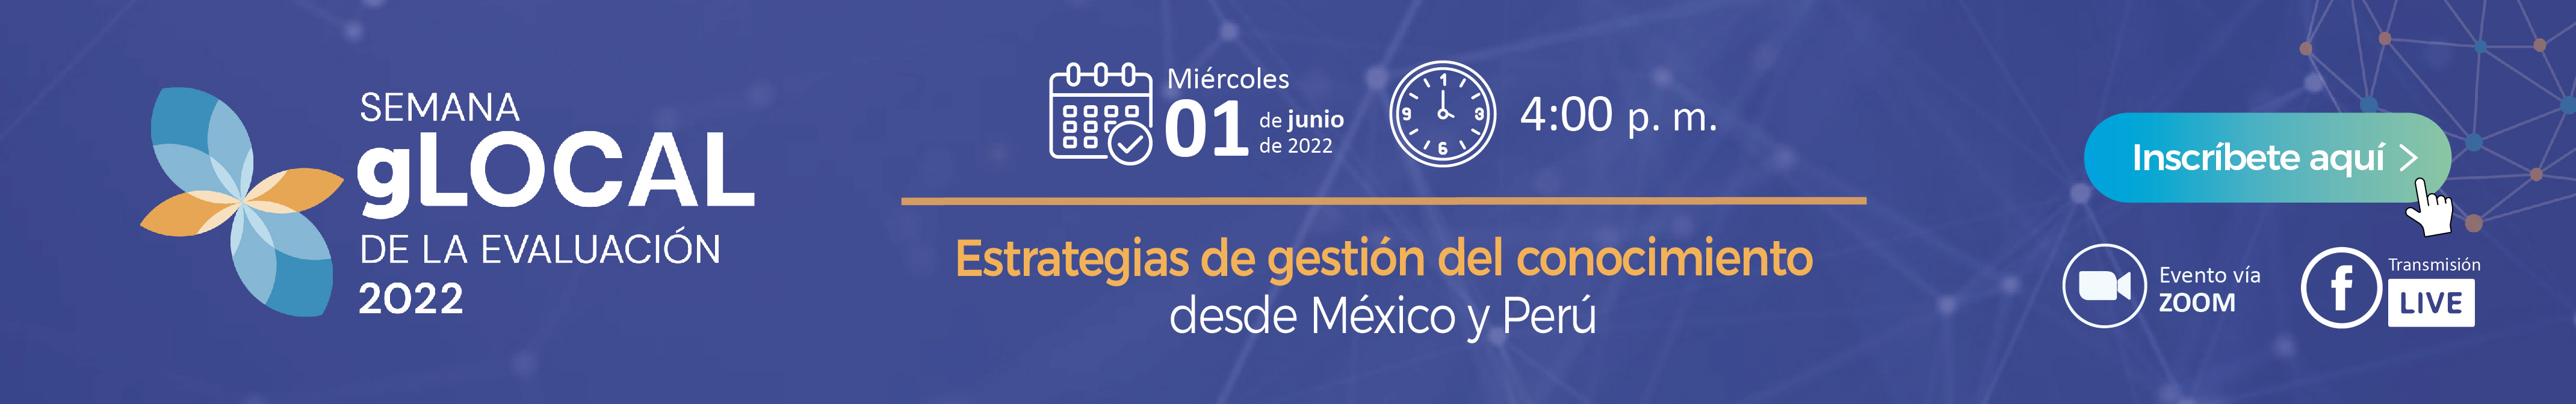 Panel “Estrategias de gestión del conocimiento de las evaluaciones con funcionarios y decisores en Perú y México”